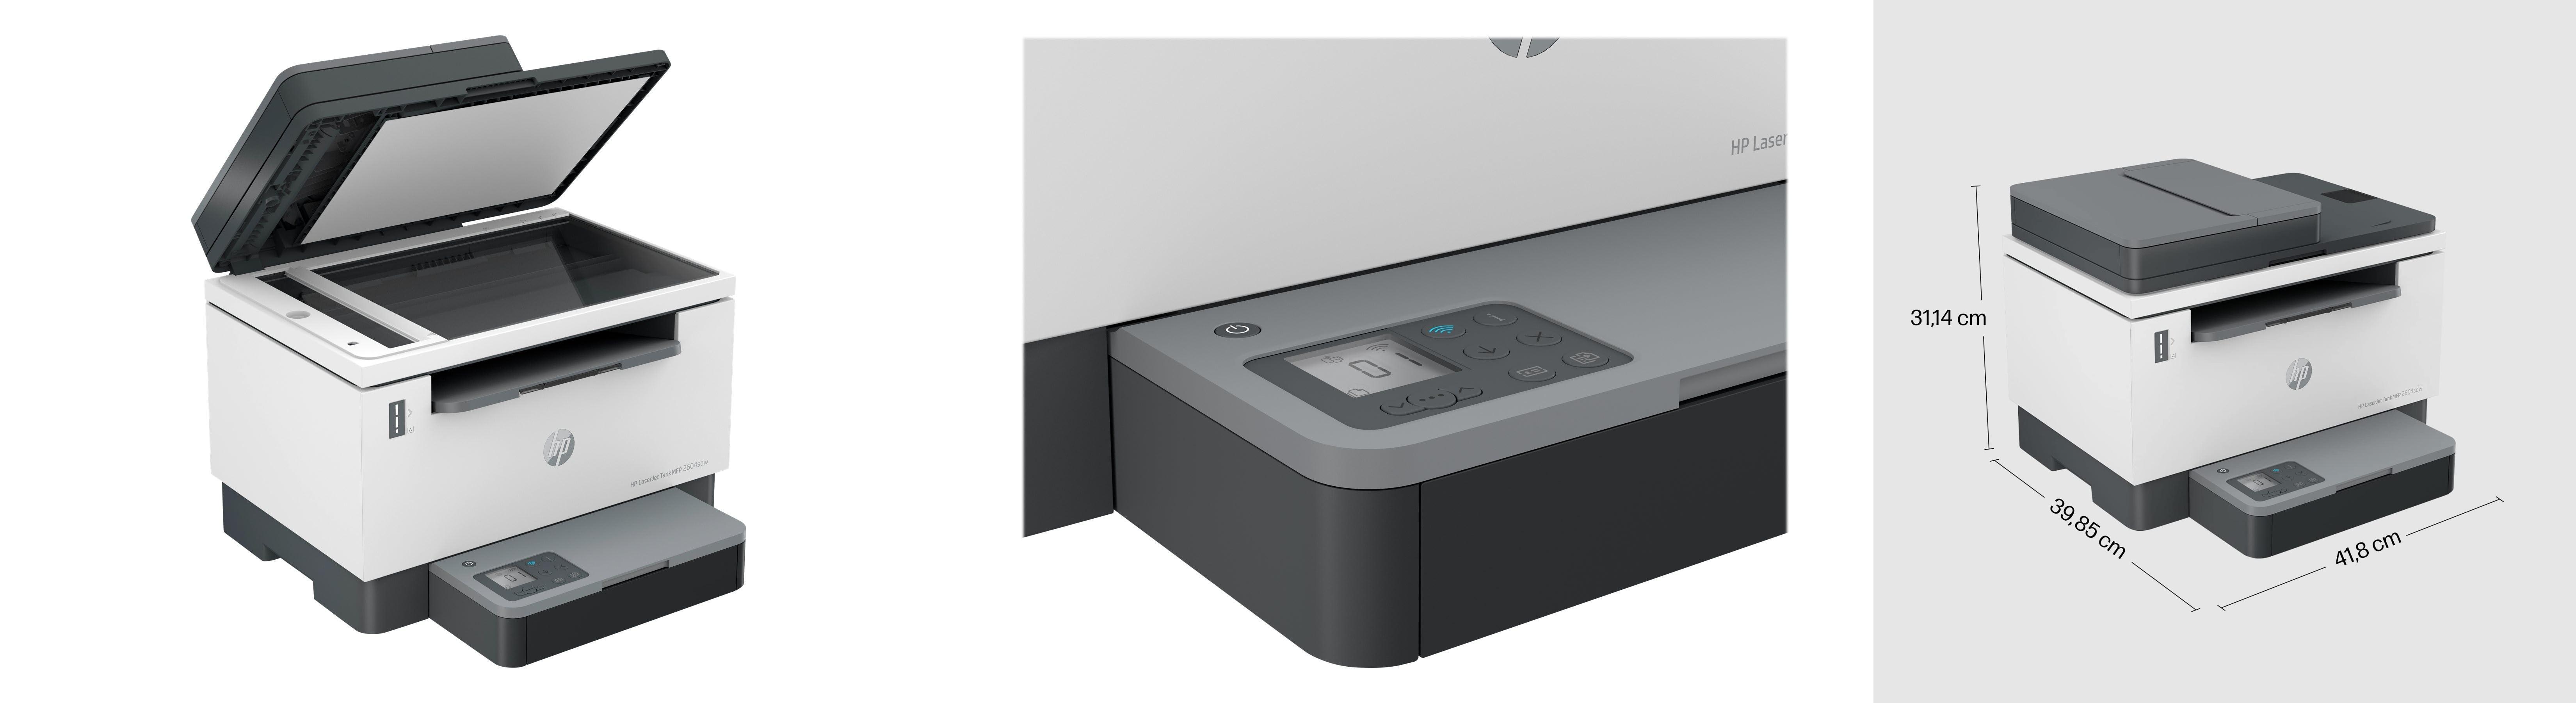 HP LaserJet Tank MFP 2604sdw: La impresora láser multifunción perfecta para tu negocio